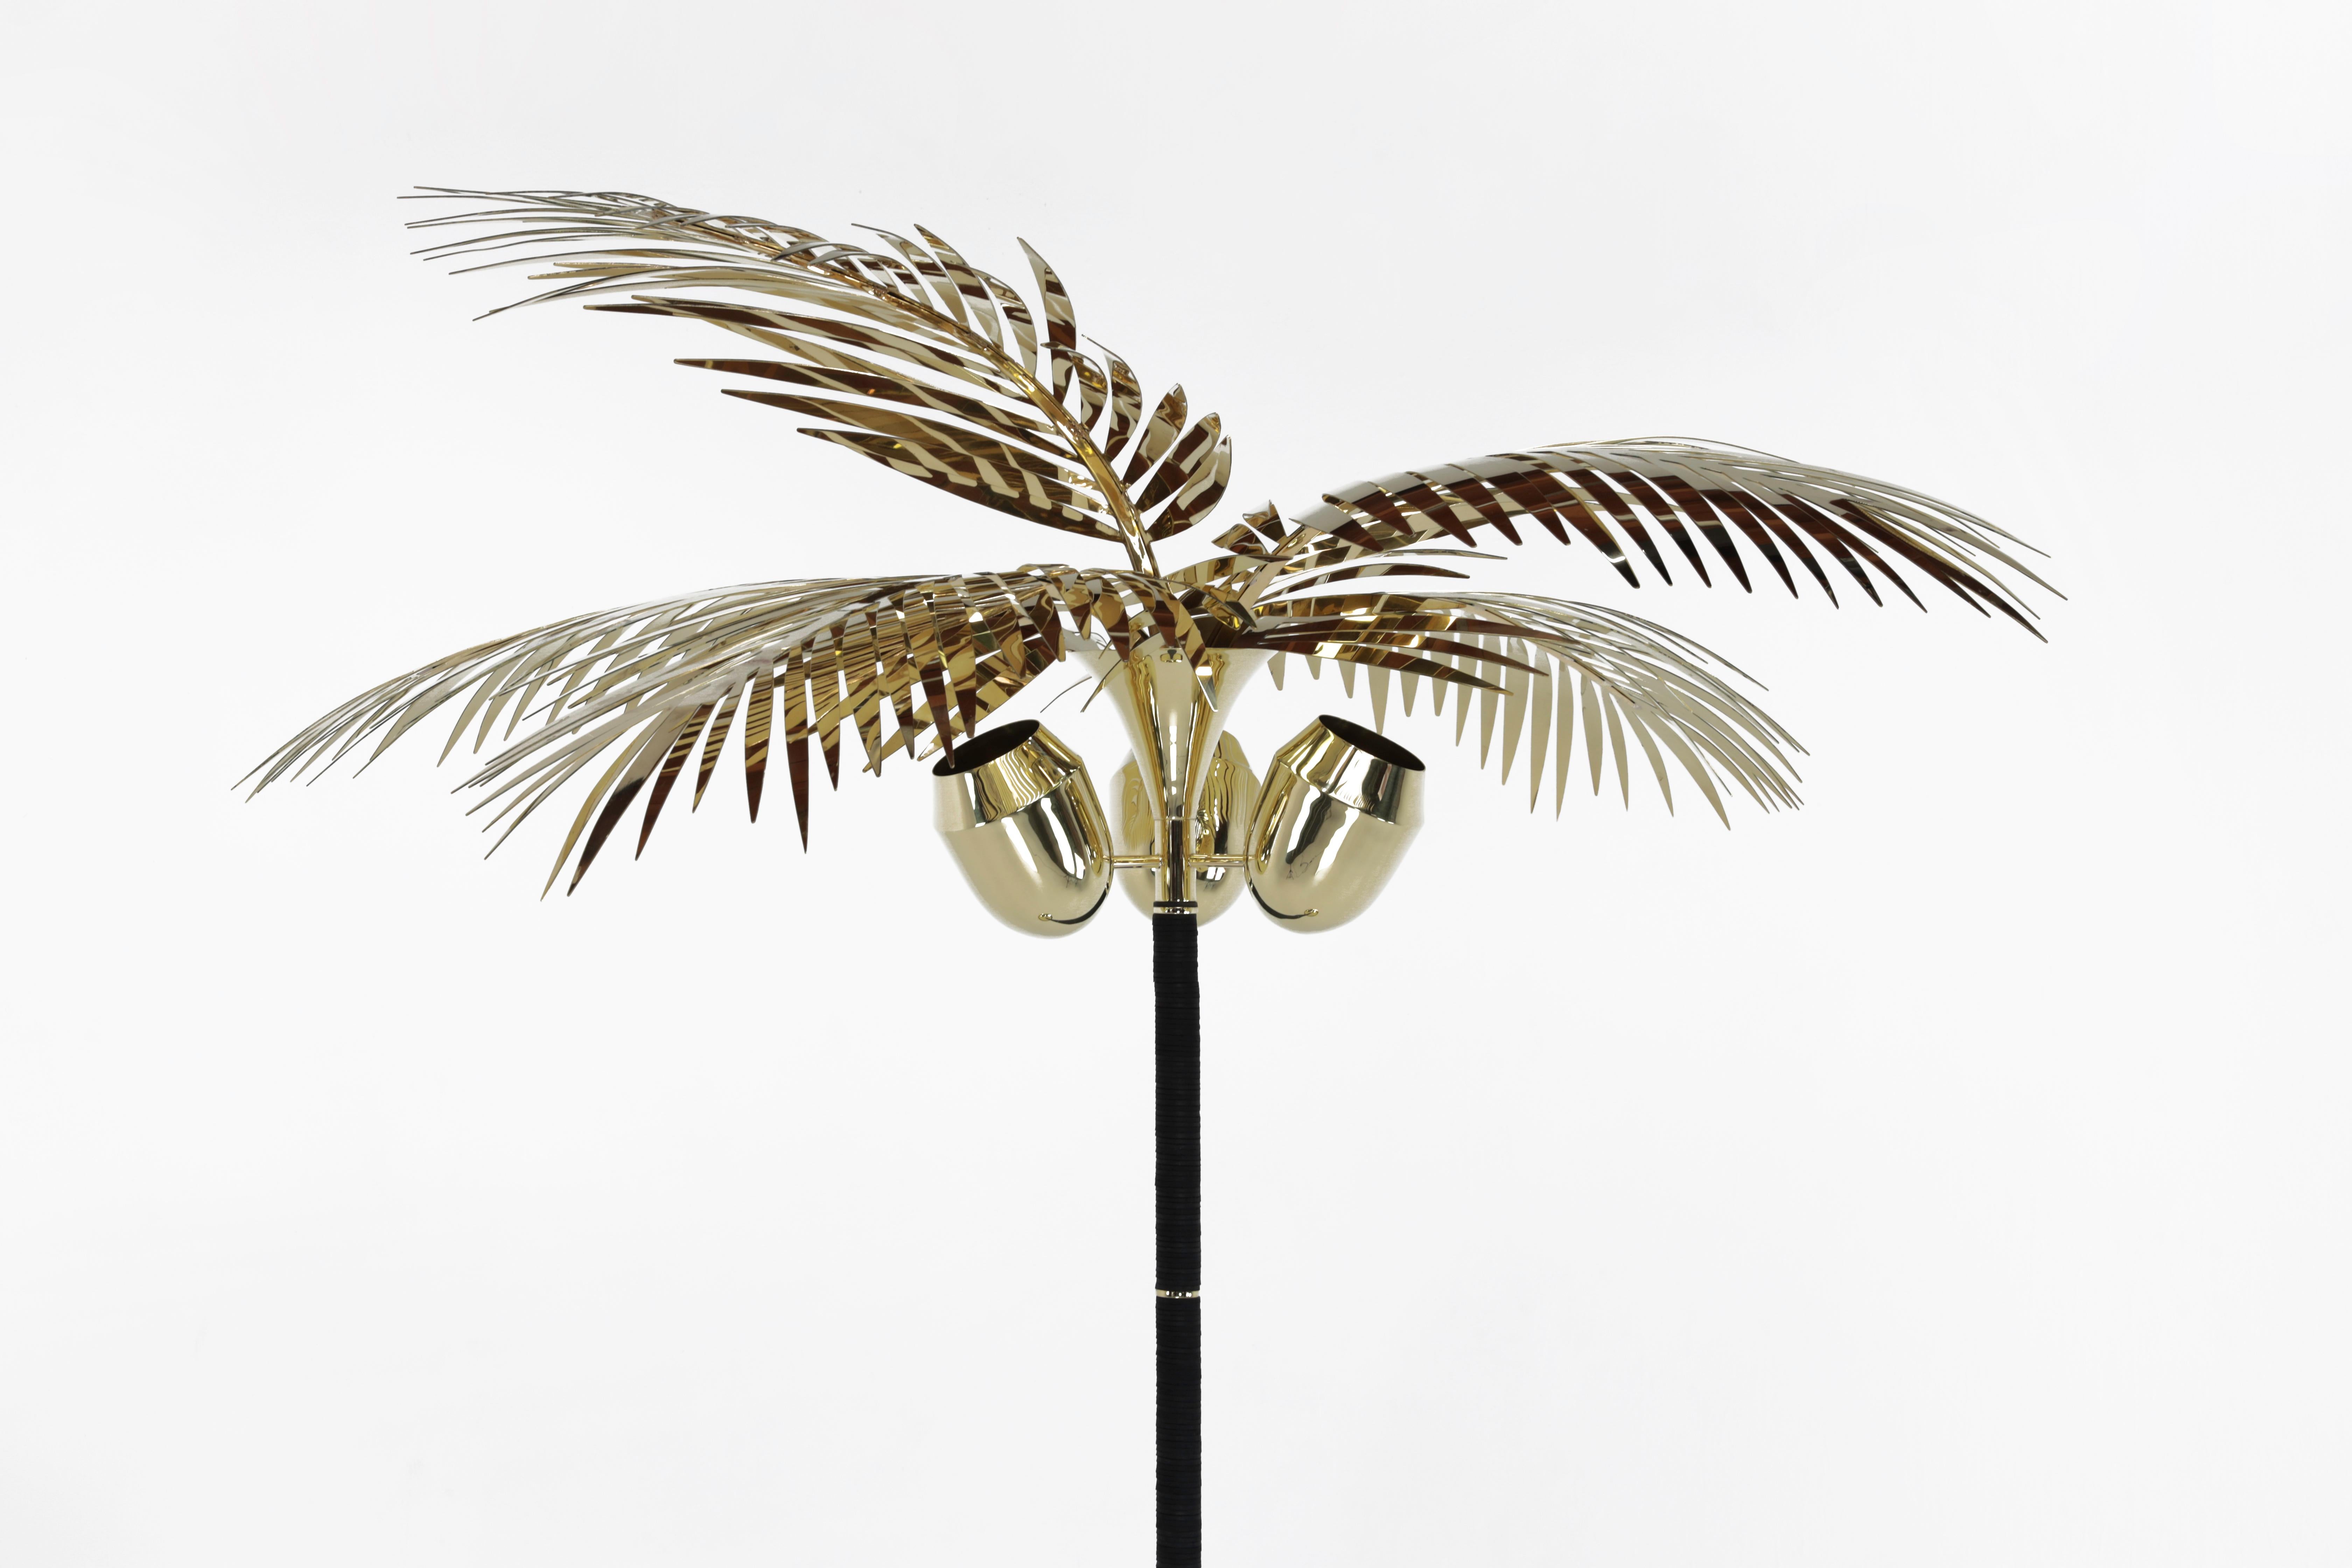 Le lampadaire Royal Palm est une célébration de la vie et de la création à Los Angeles depuis près de vingt ans. Le palmier est autant une sculpture, qu'un lampadaire.
Le corps est fait de cuir de selle empilé, de laiton, le tout sculpté à la main